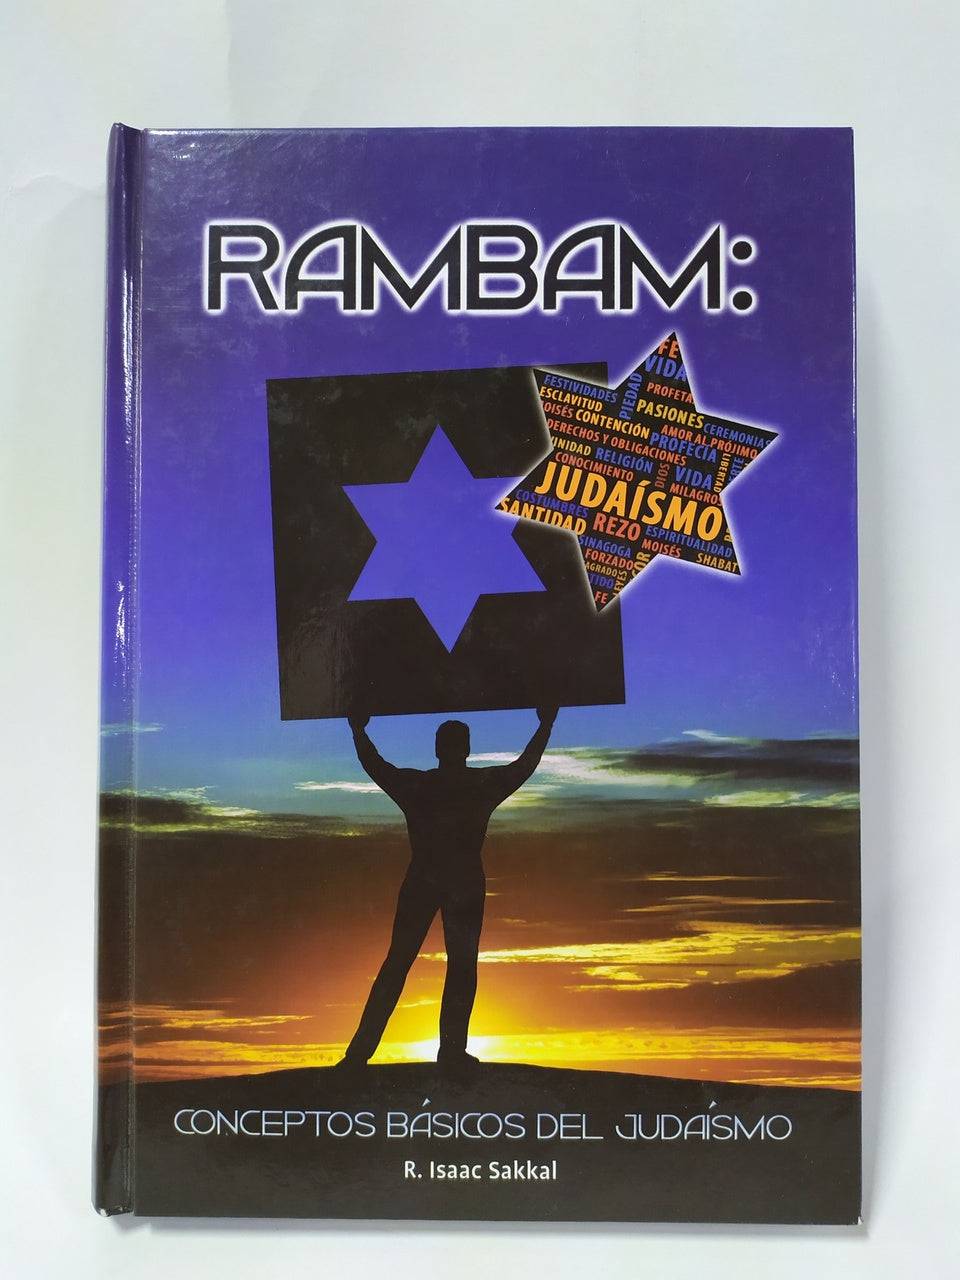 Rambam Conceptos Basicos Del Judaismo - Libreria Jerusalem Centro